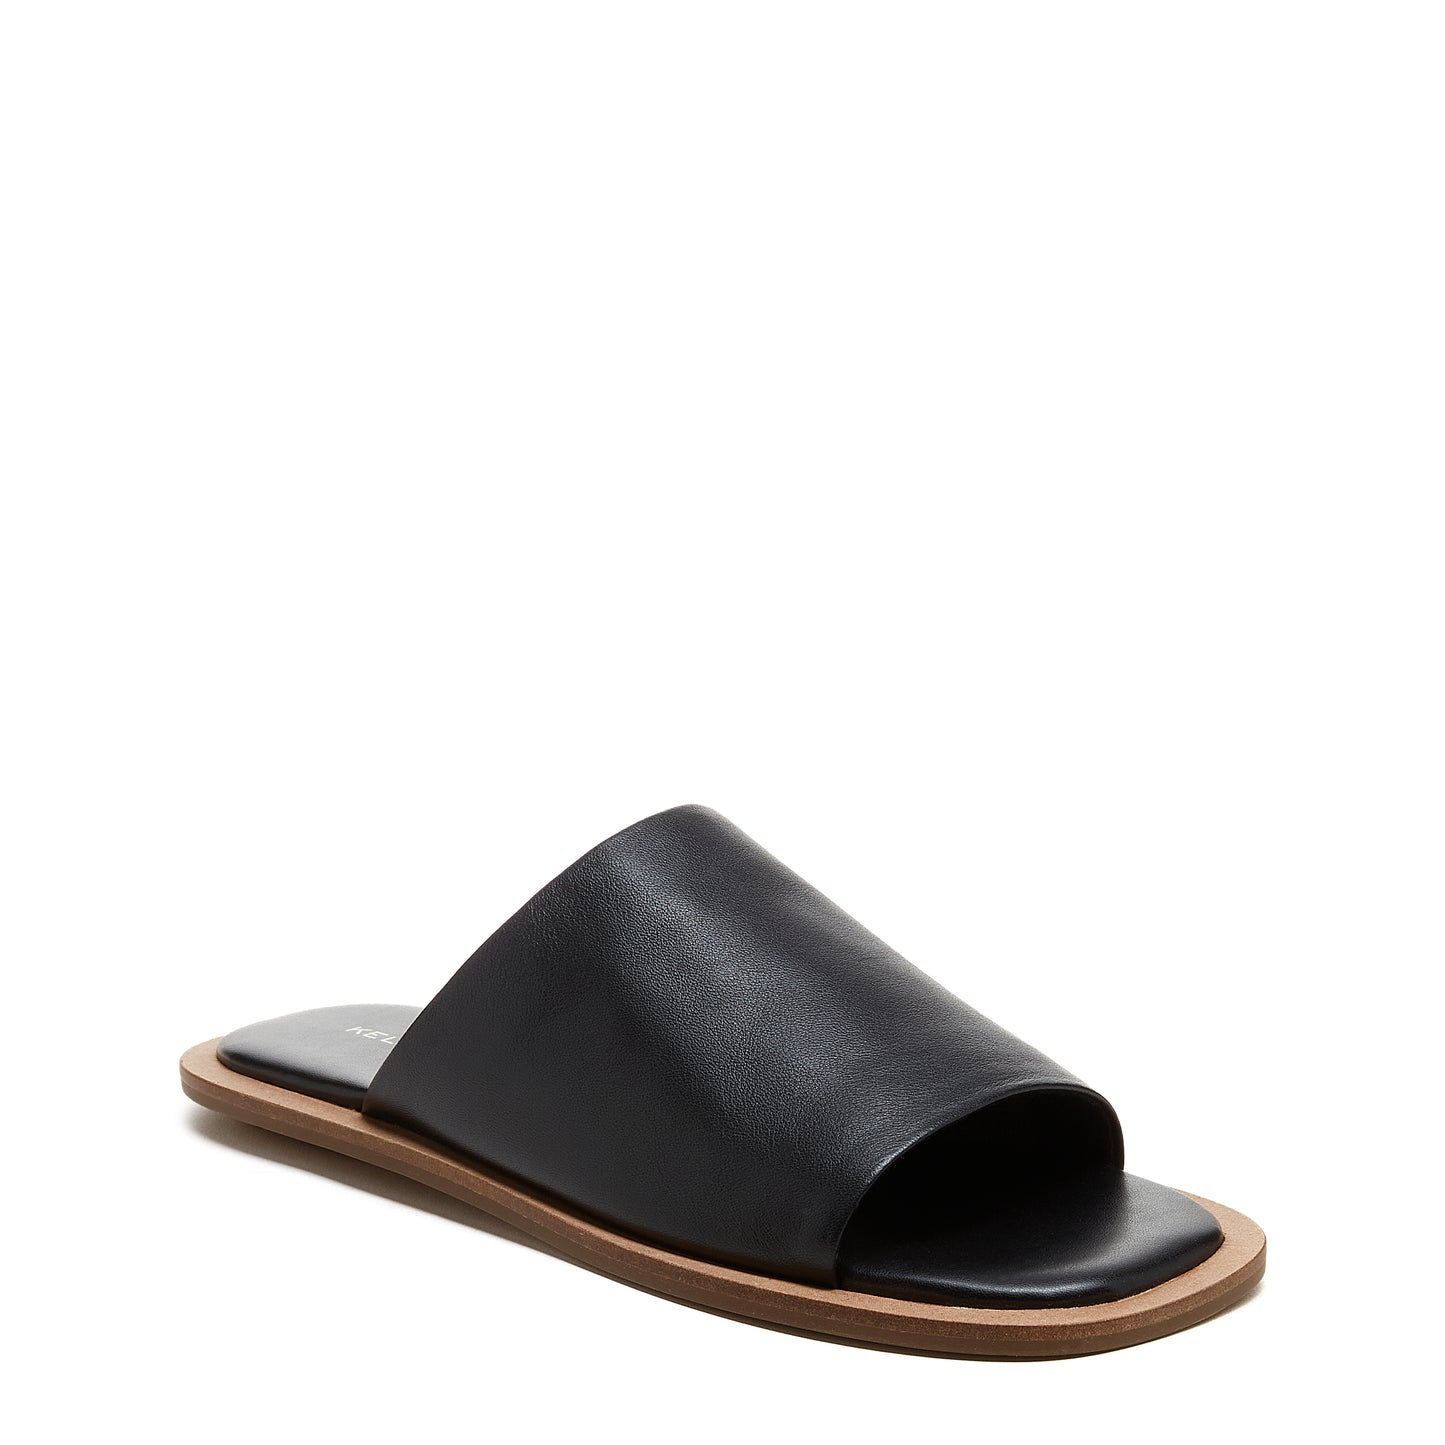 Benny Black Slide Sandals